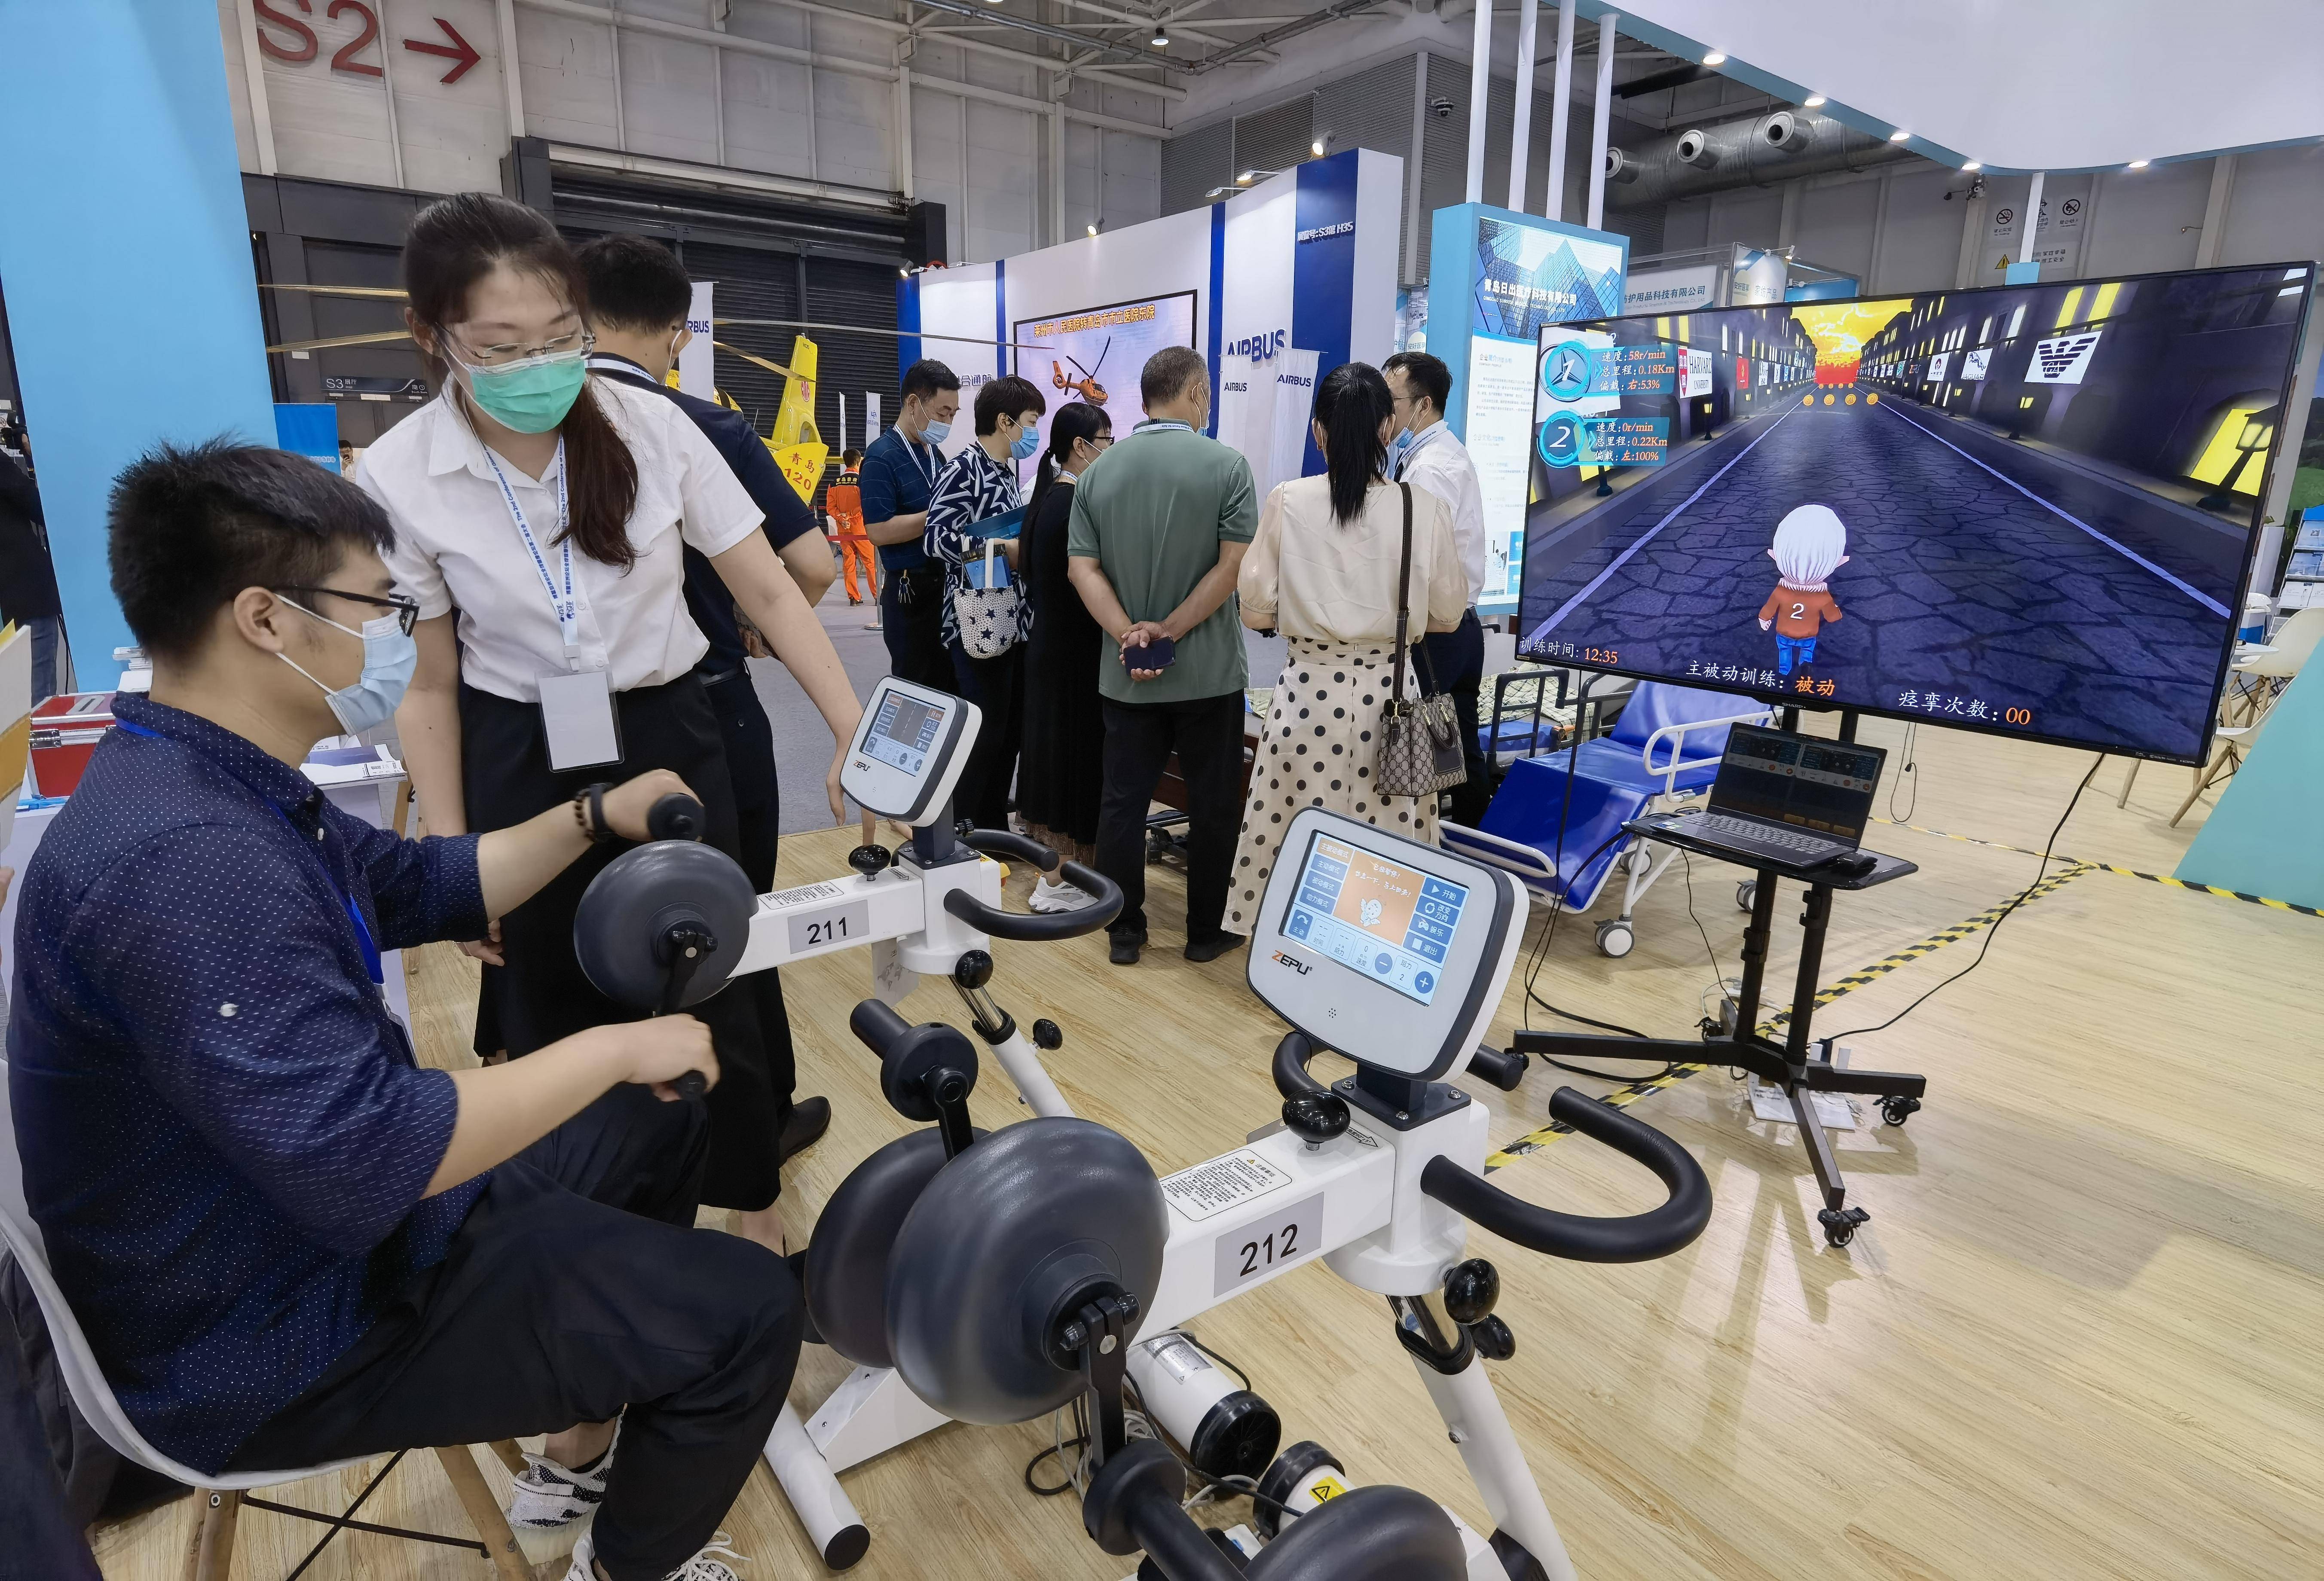 参展者在博览会体验最新医疗设备。韩星